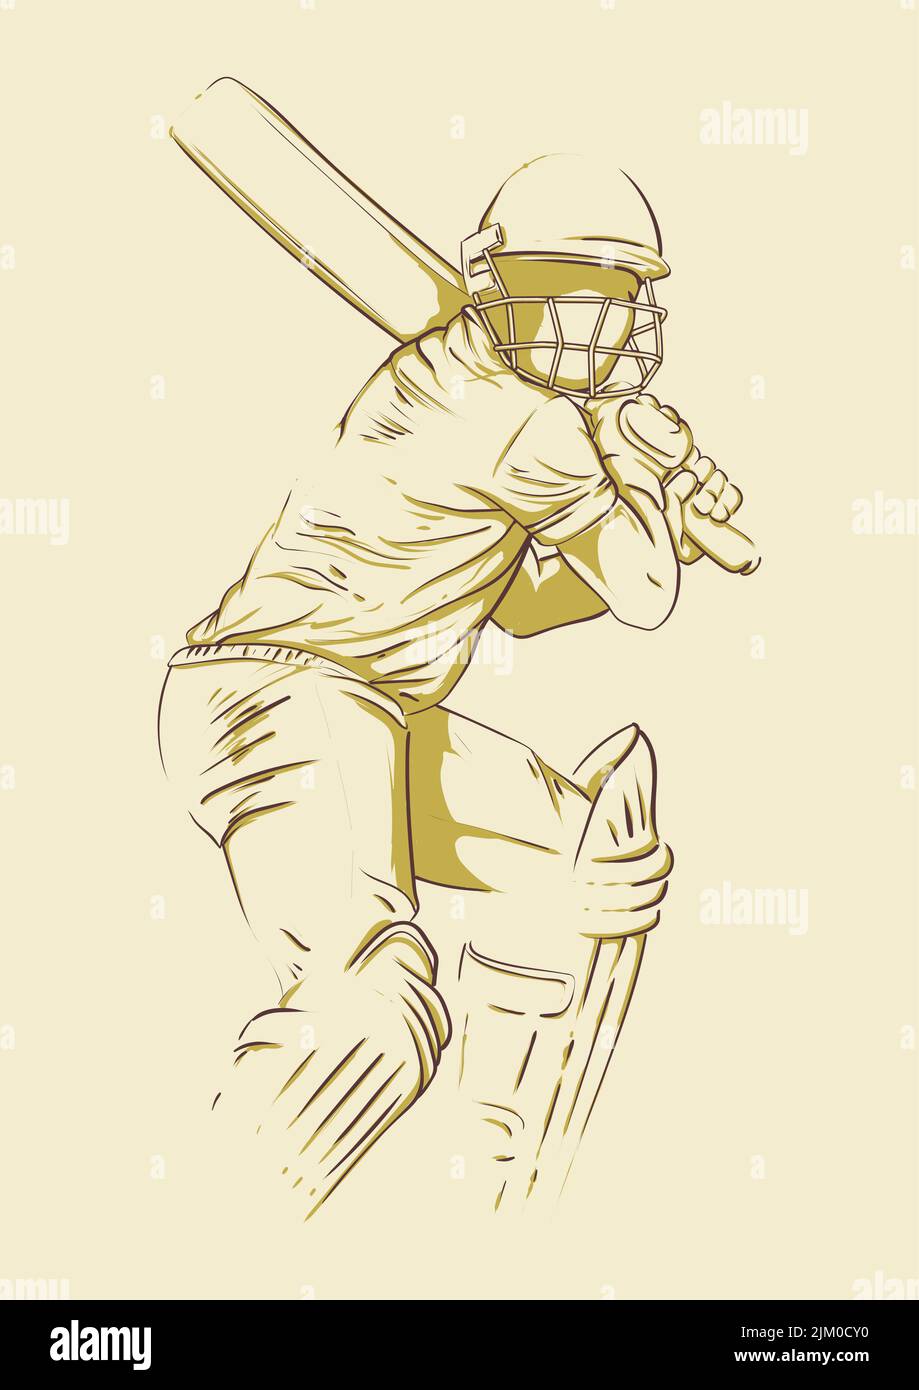 Cricket-Spieler Batsman bereit, den Ball zu schlagen. Unvollendete Hand Zeichnung Skizze Stil Vektor-Illustration. Für Ankündigung Poster, Präsentation und adve Stock Vektor